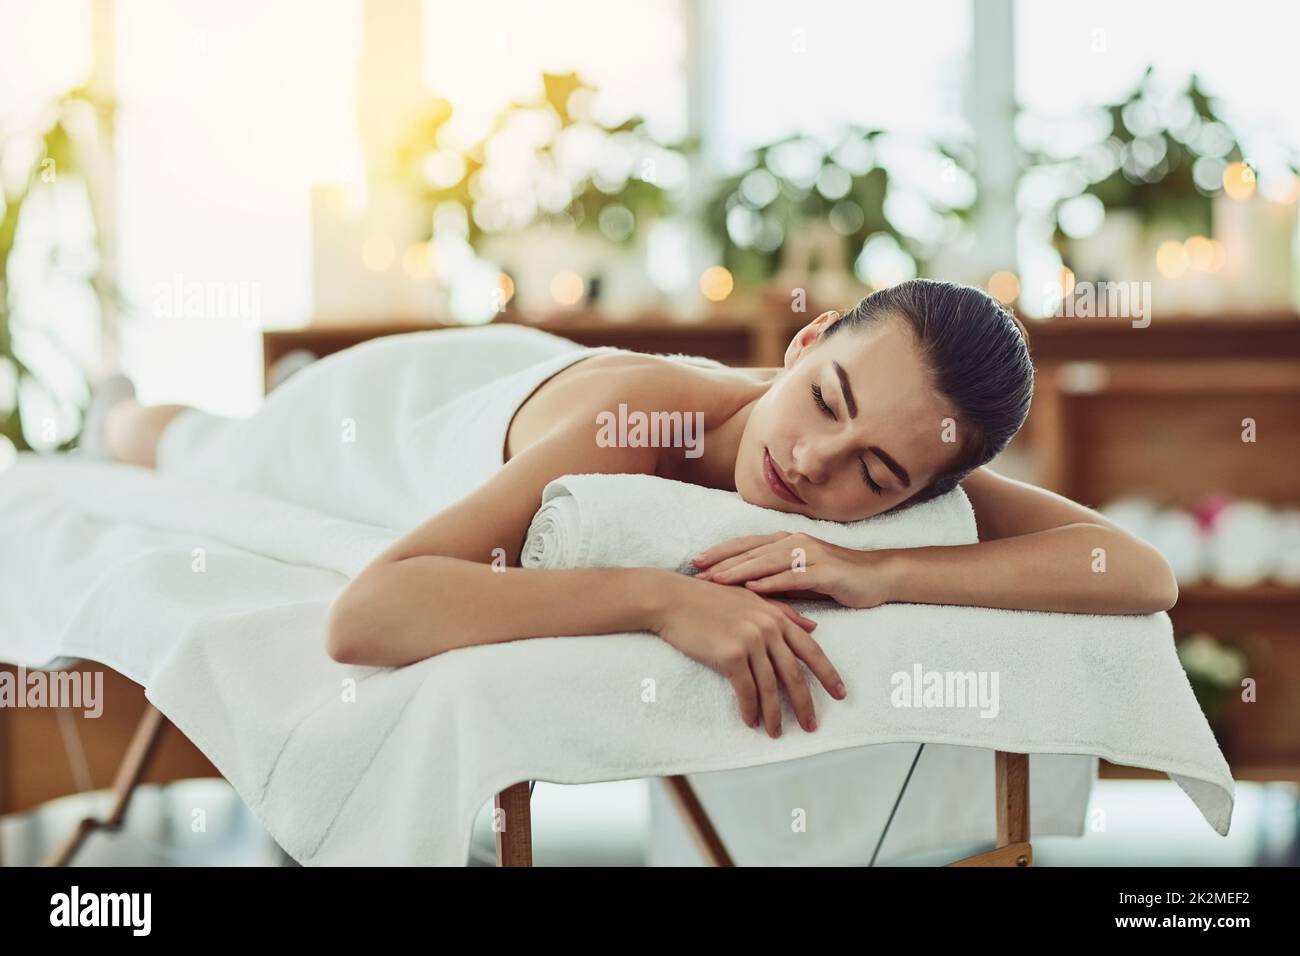 Faites de votre bien-être une priorité aujourd'hui. Photo d'une jeune femme attirante se faisant dorloter dans un spa de beauté. Banque D'Images